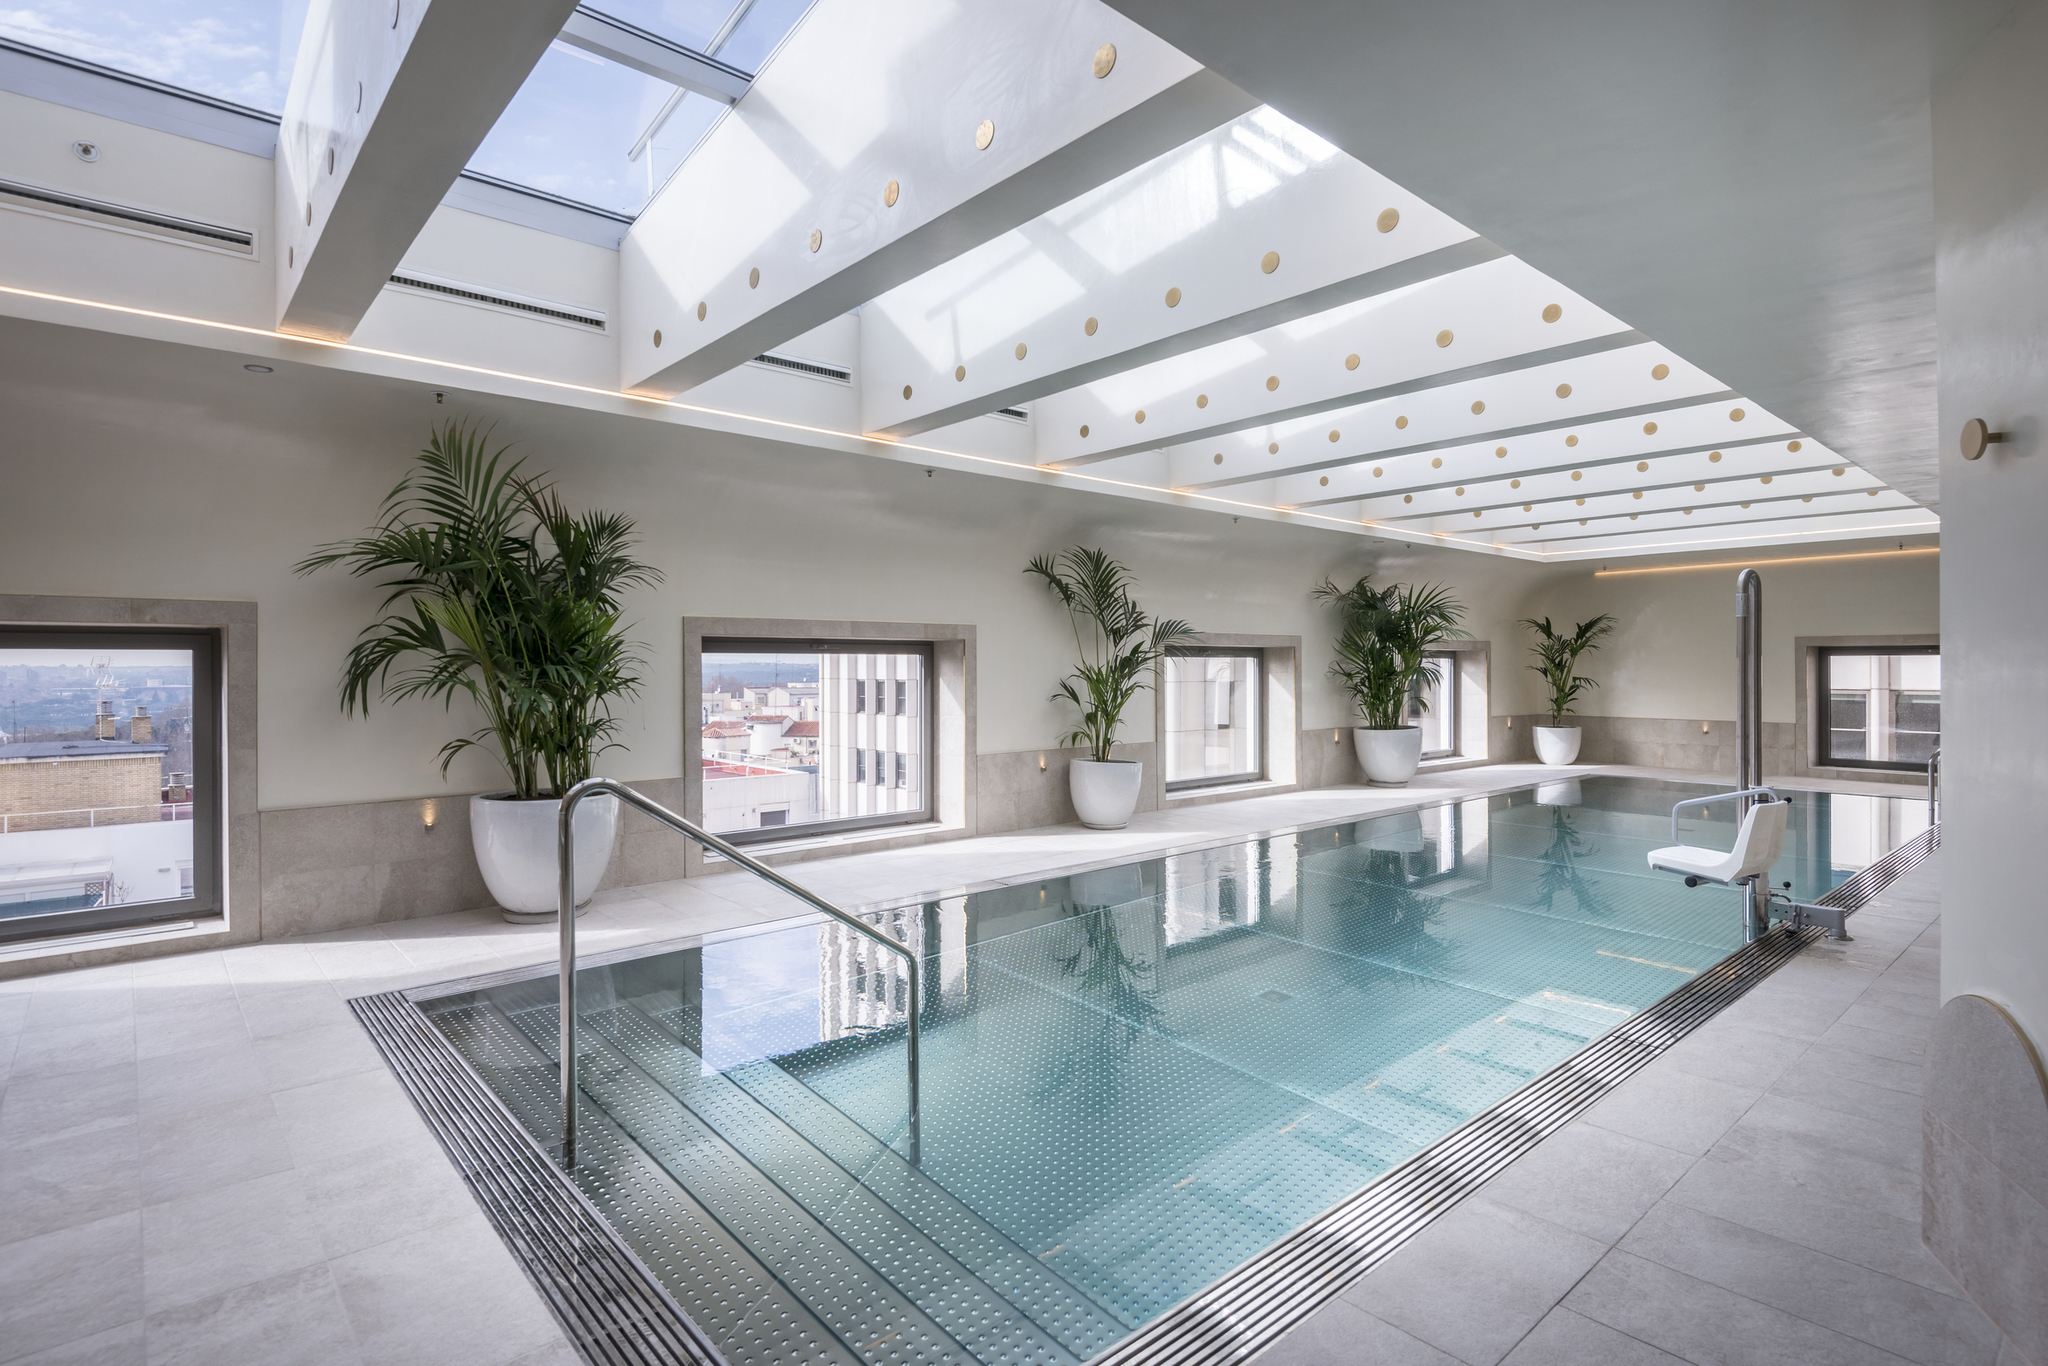 El hotel Torre Barceló Madrid abre un nuevo espacio wellness en su octava planta con una piscina climatizada todo el año.